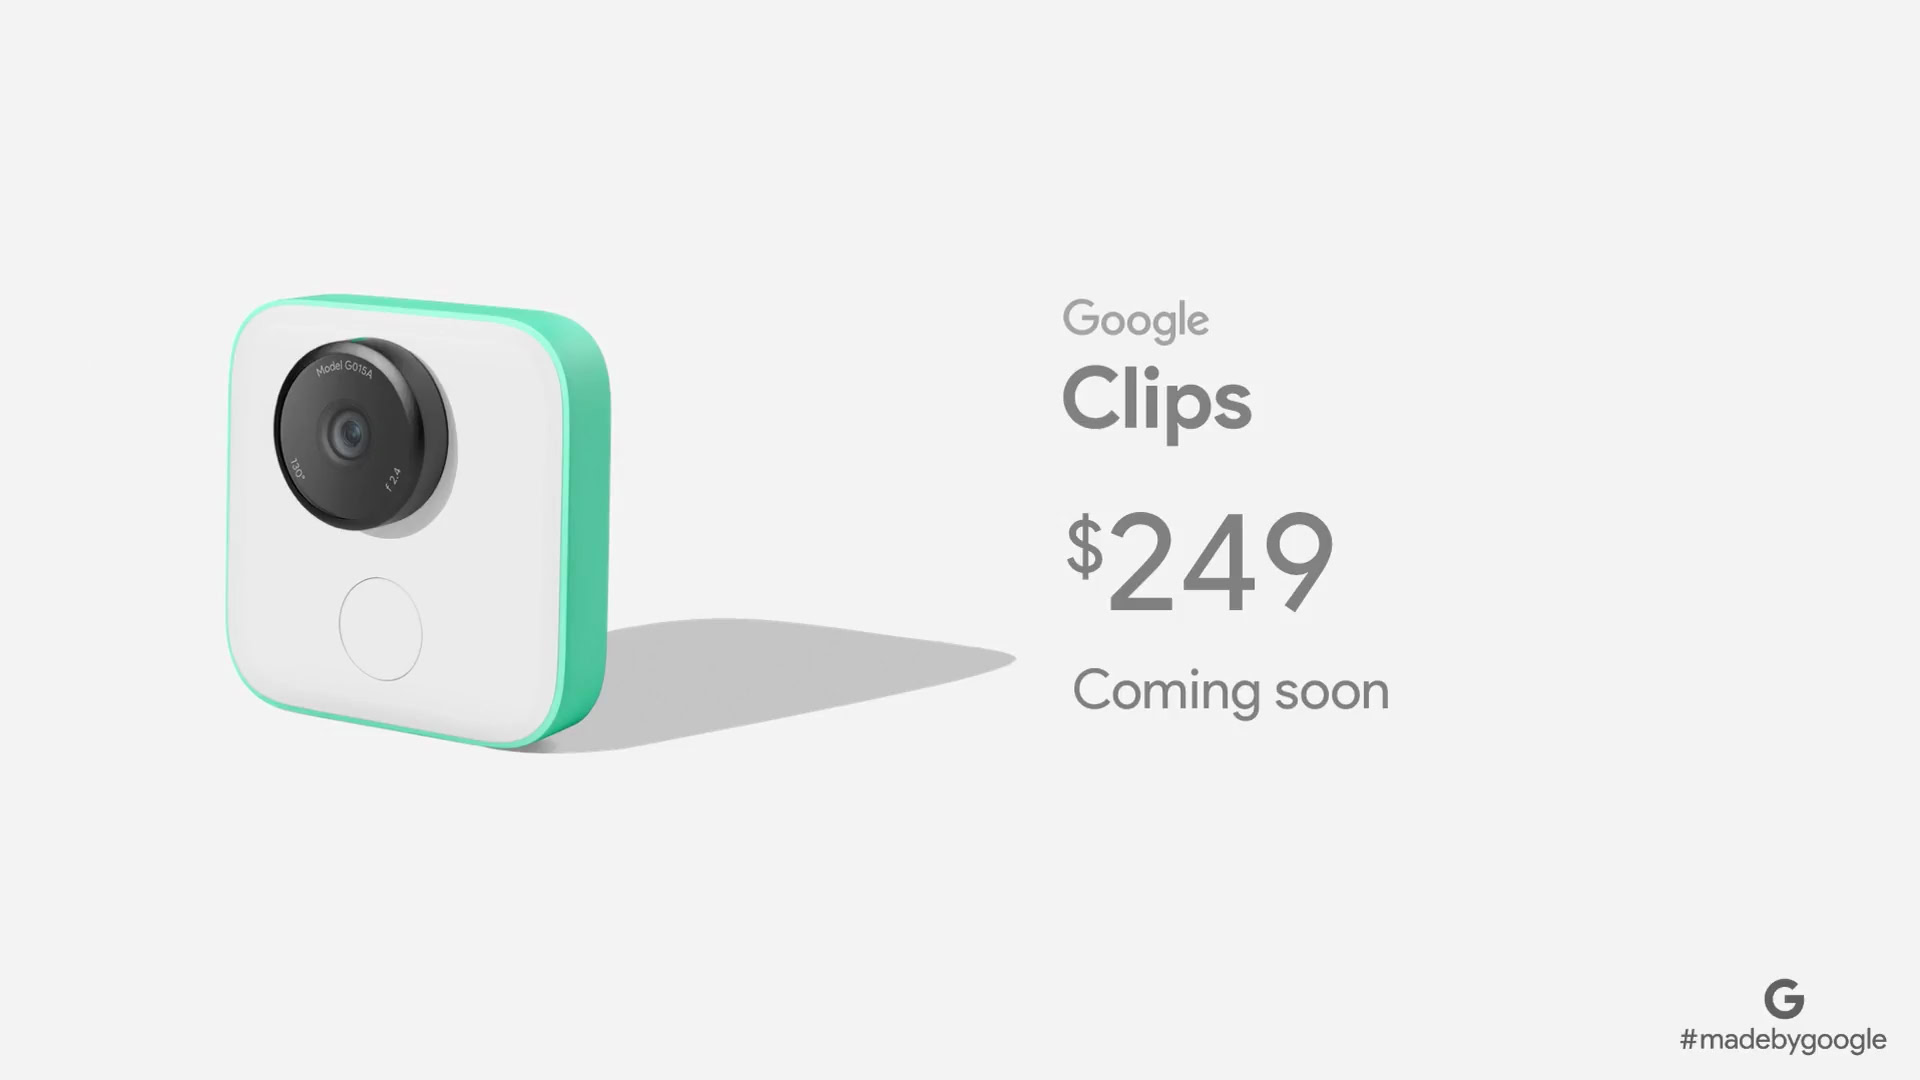 Гугл камера на английском. Google clips. Умная камера гугл. Сколько стоит Google clips.